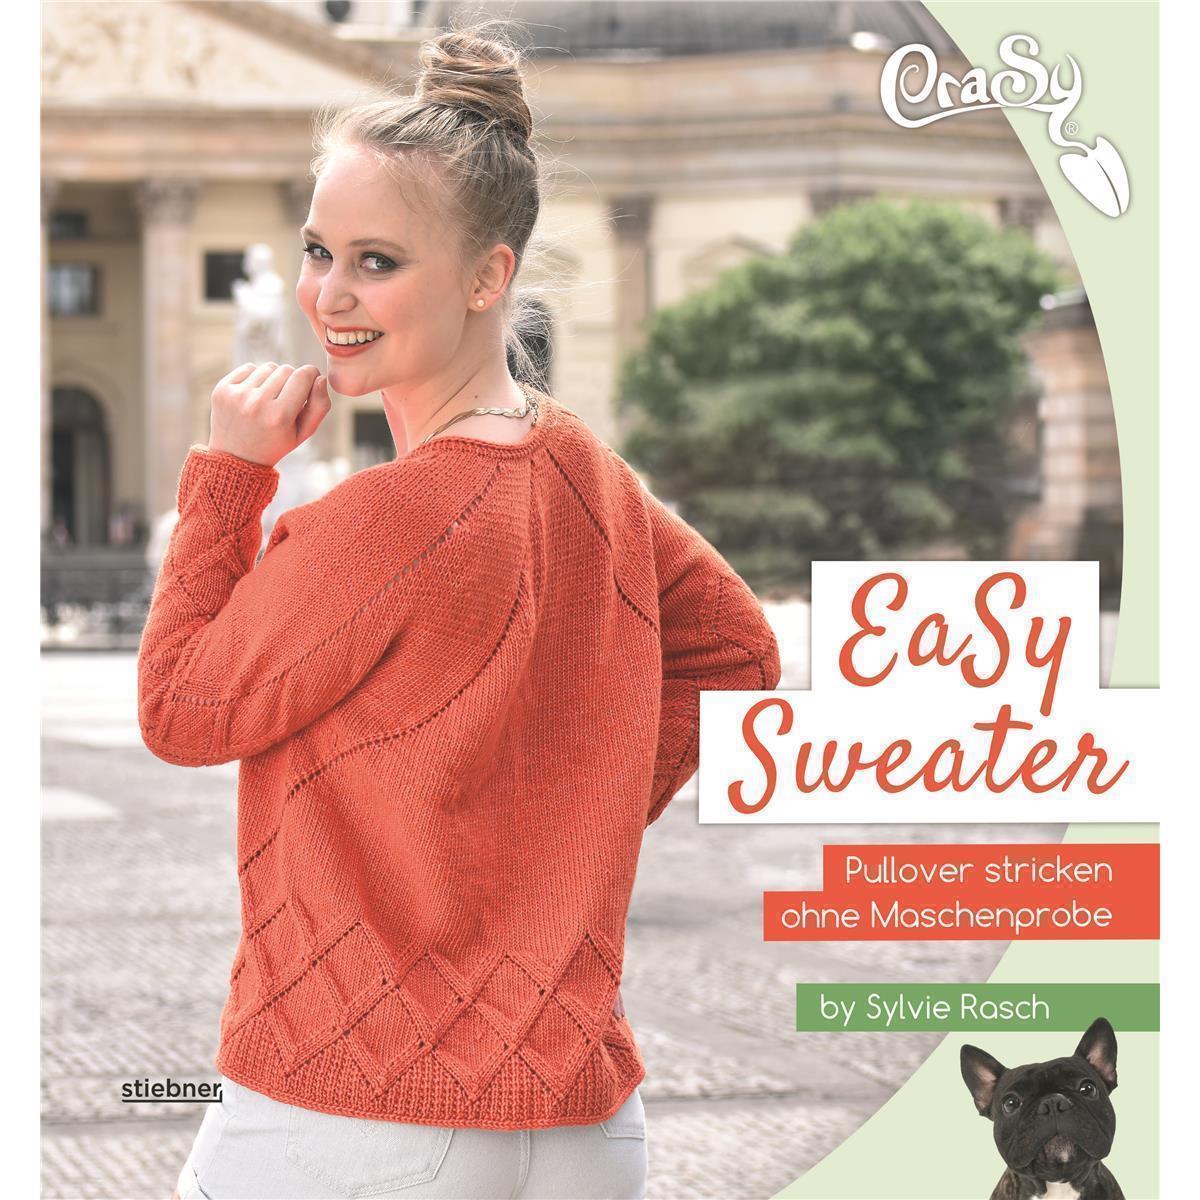 Easy Sweater - Pullover ohne Maschenprobe stricken